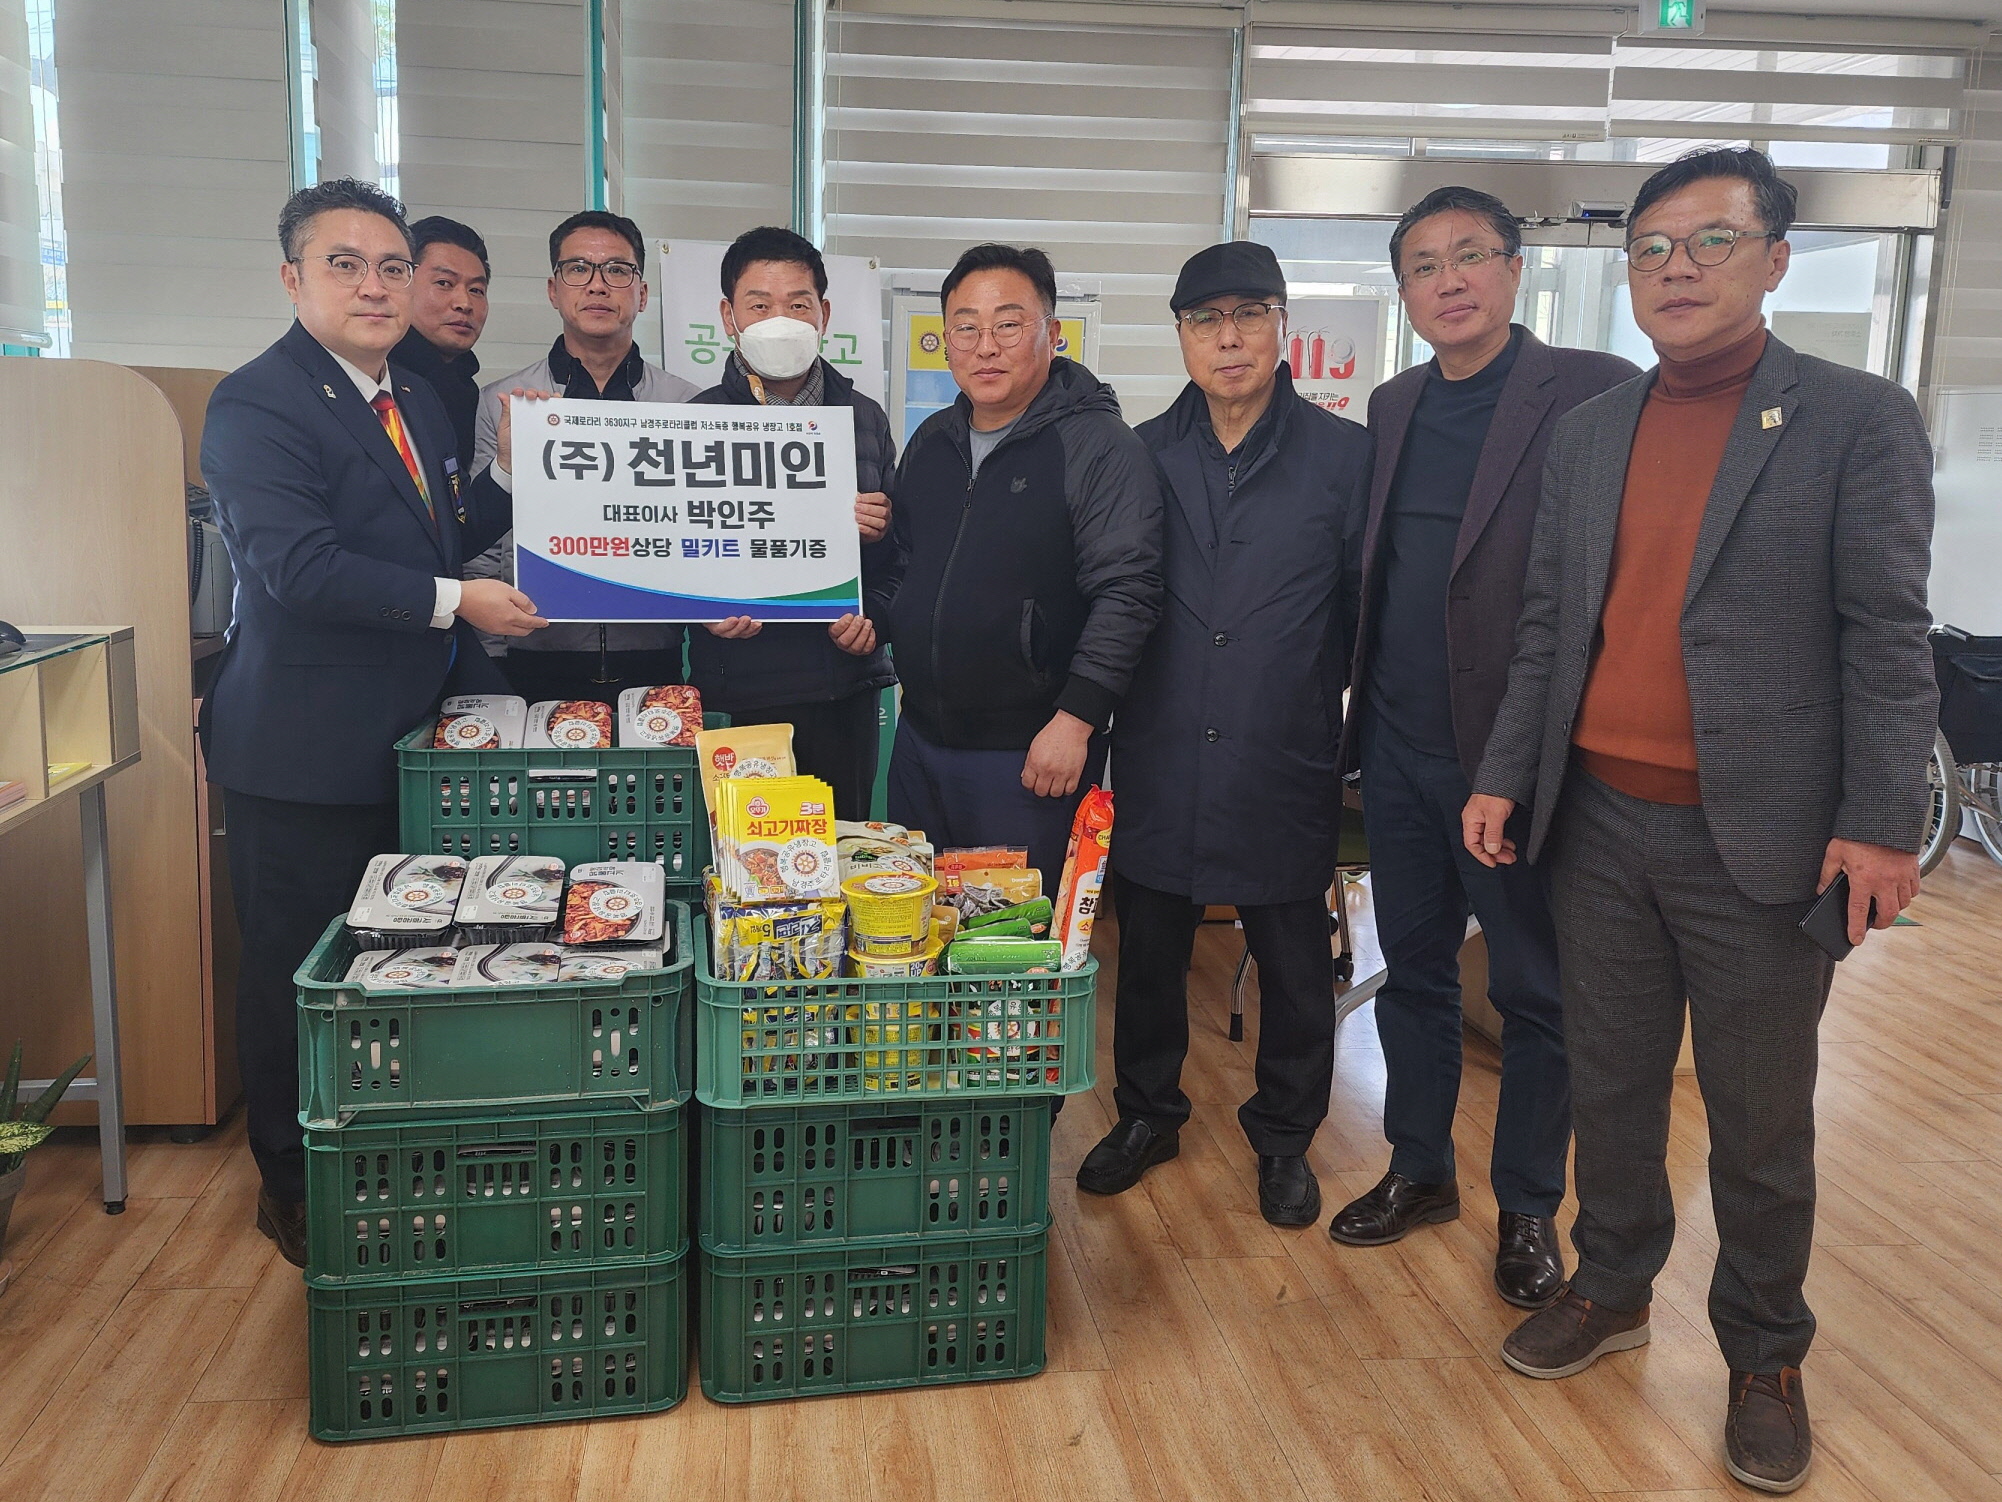 지난 20일 ㈜천년미인에서 지역 내 저소득 취약계층을 위해 성건동 행복공유냉장고에 300만원 상당의 식료품을 기탁했다.